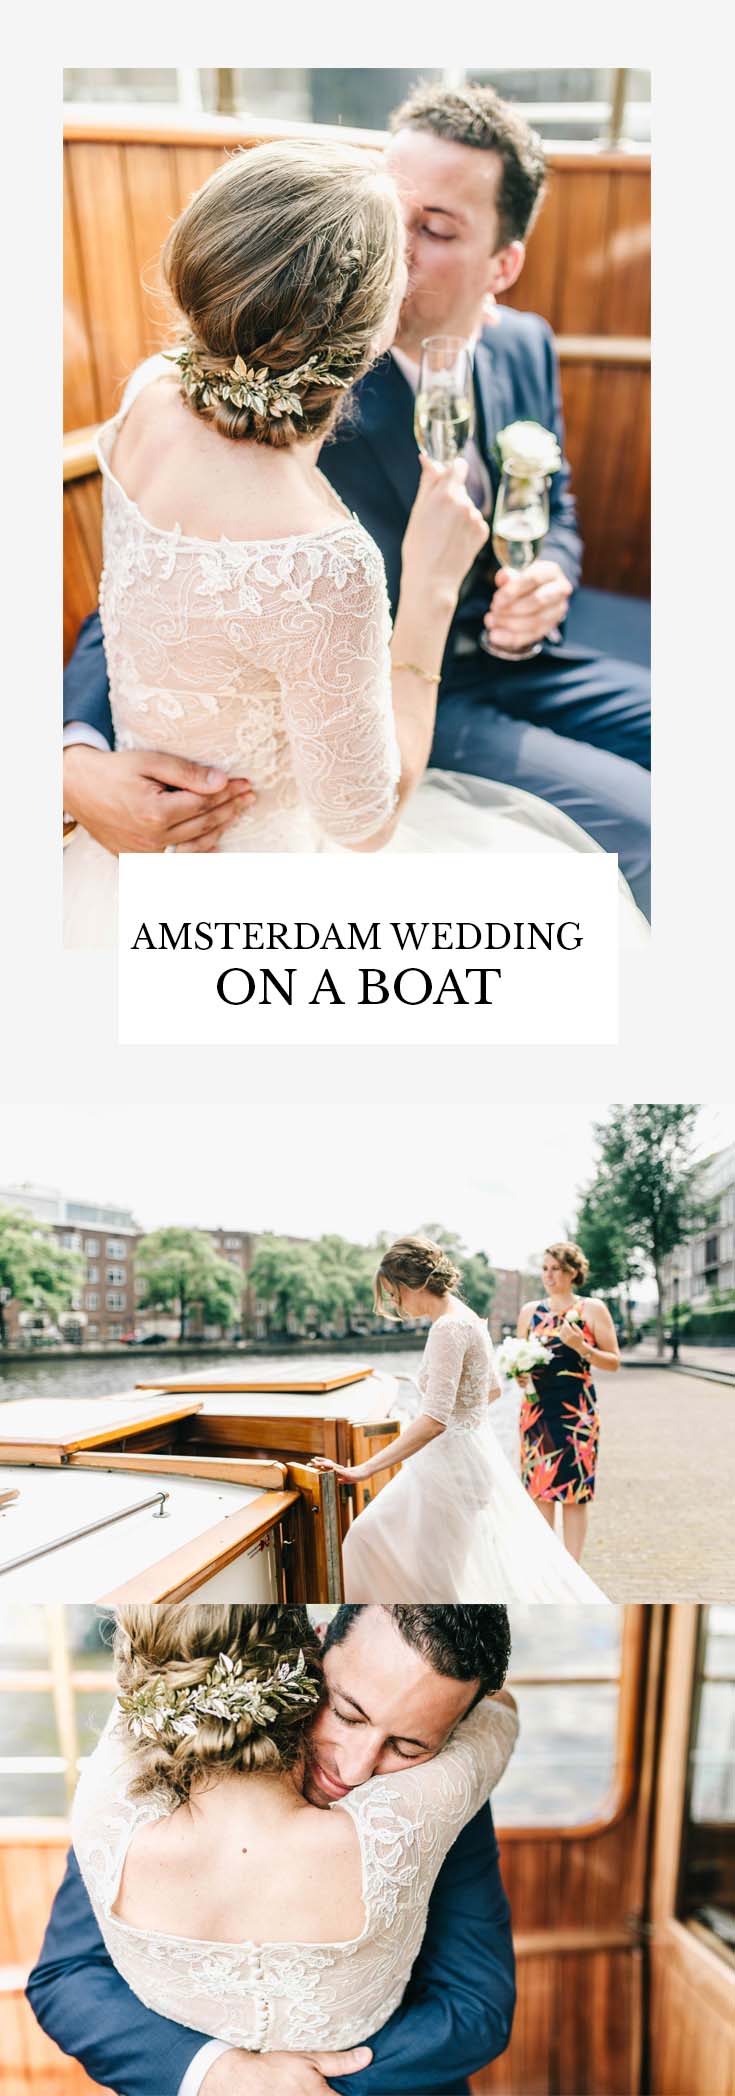 Amsterdam wedding on a boat